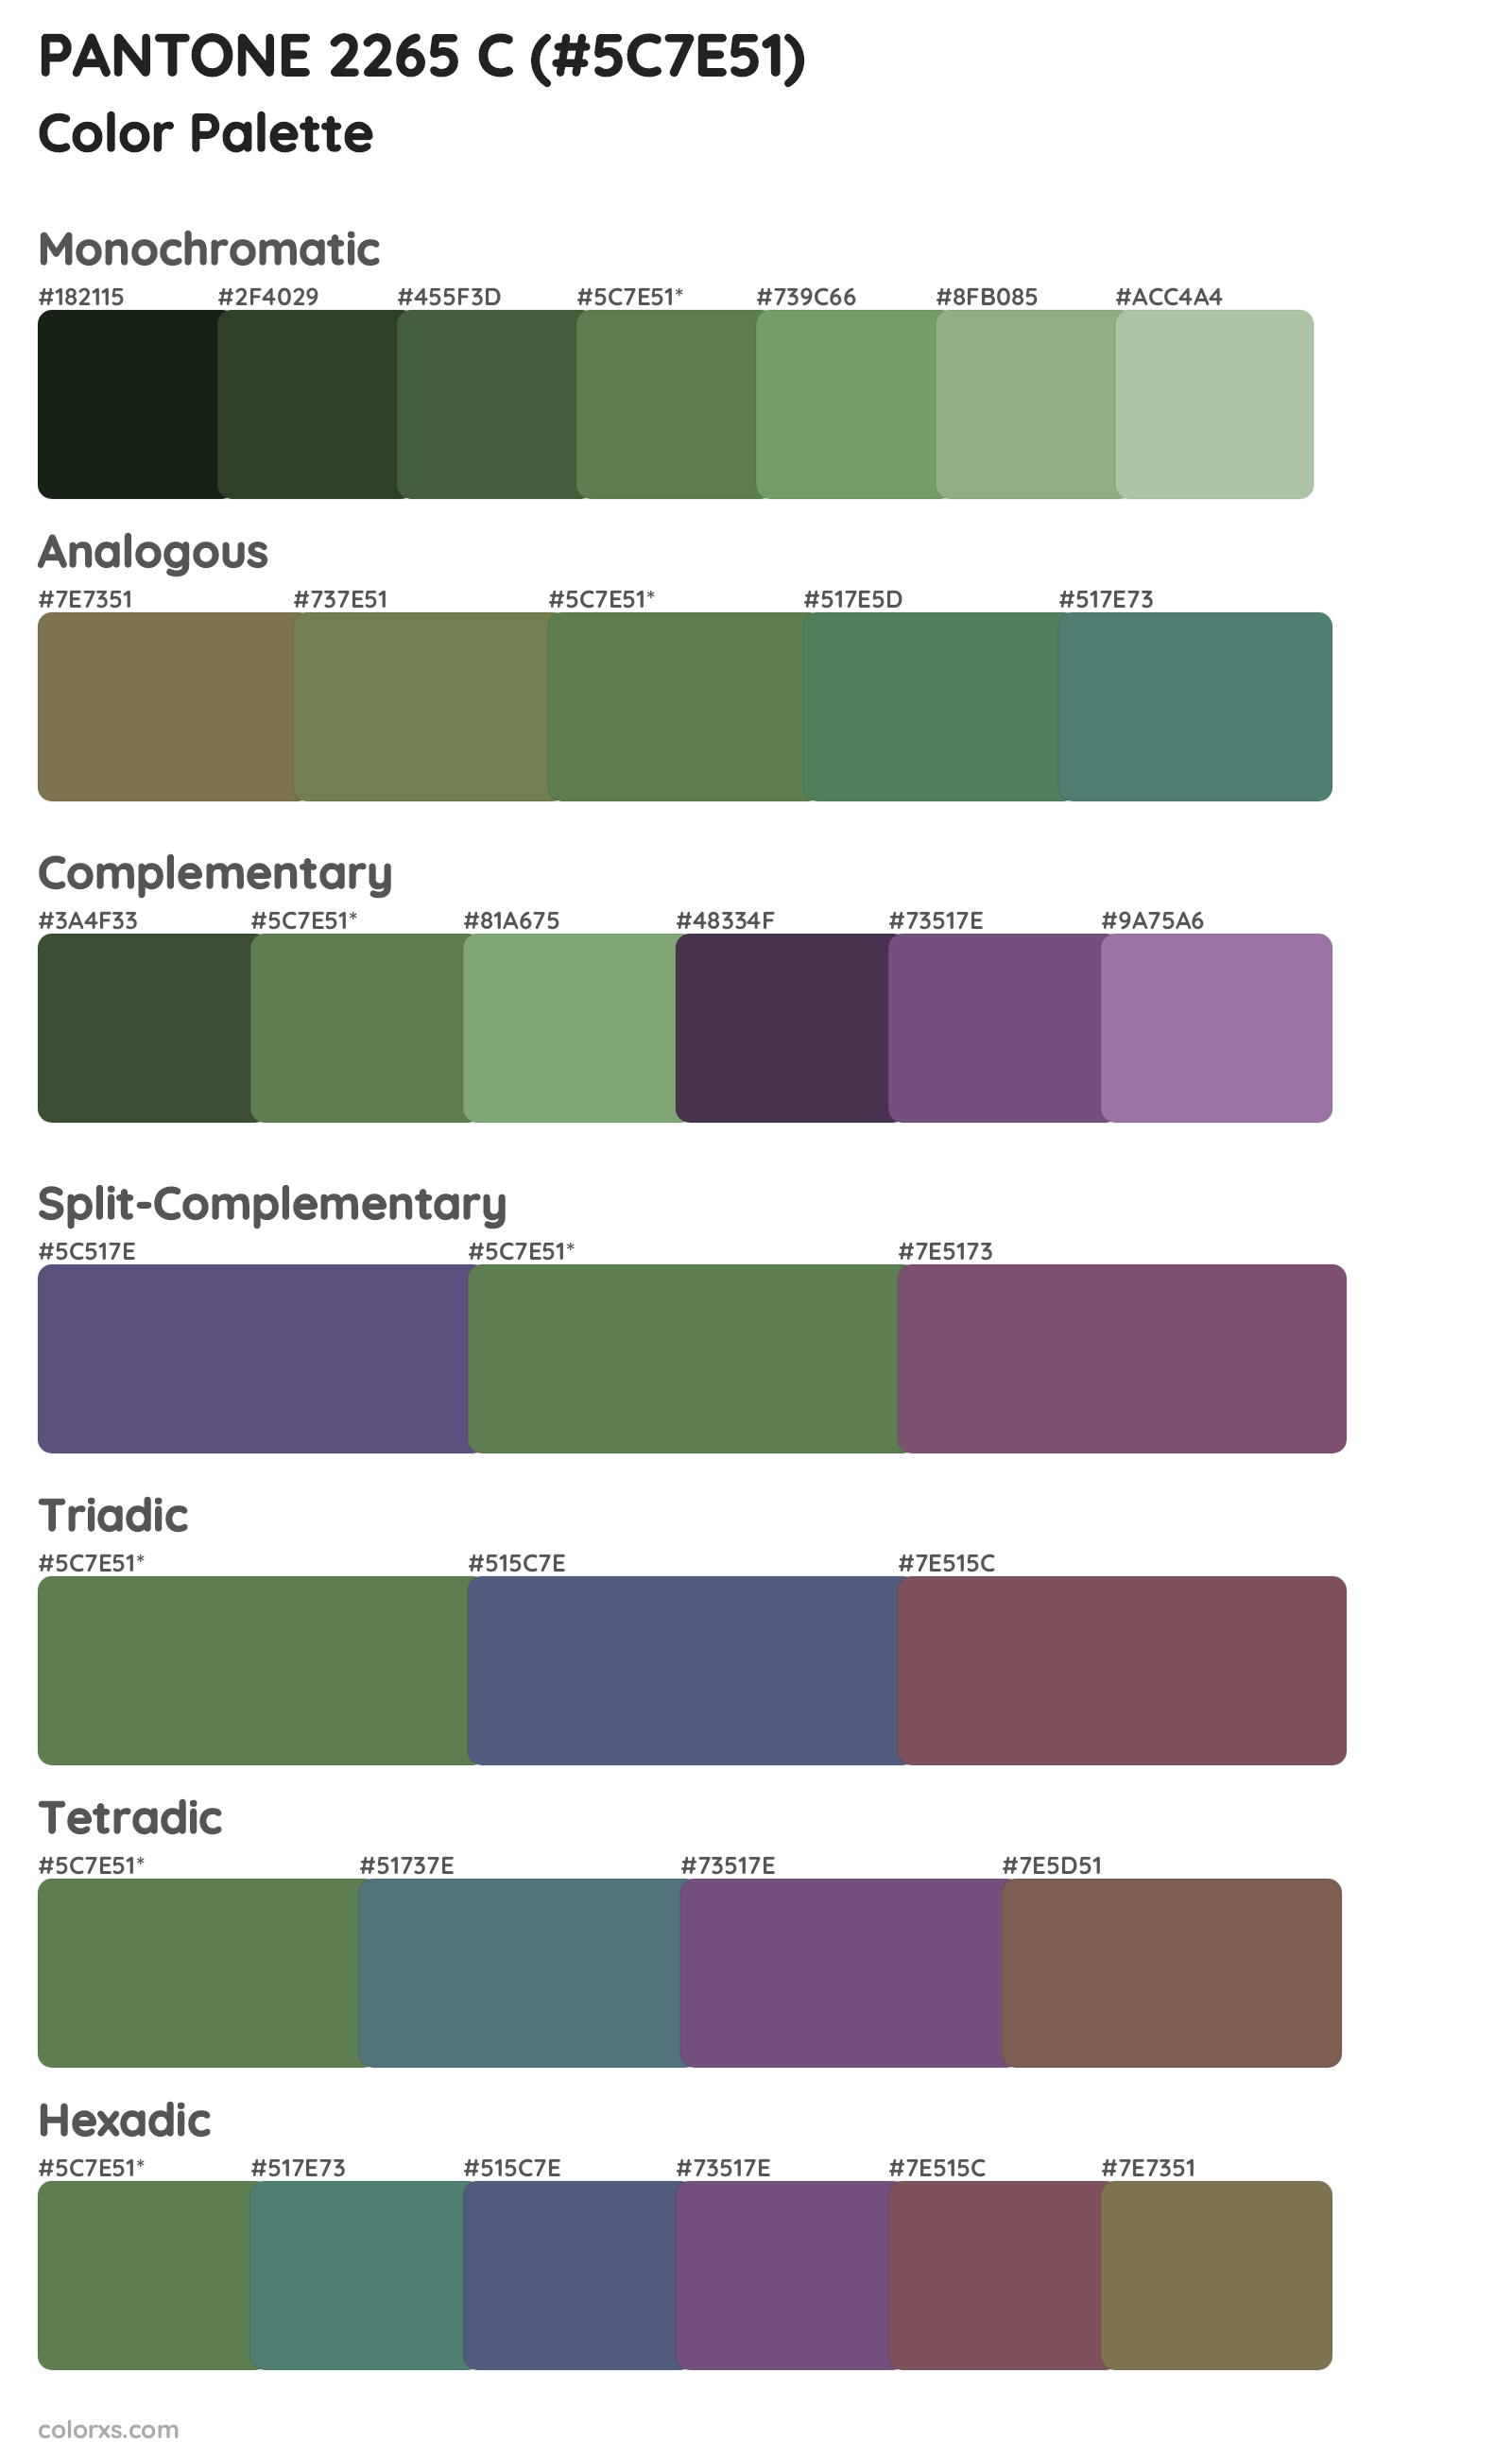 PANTONE 2265 C Color Scheme Palettes